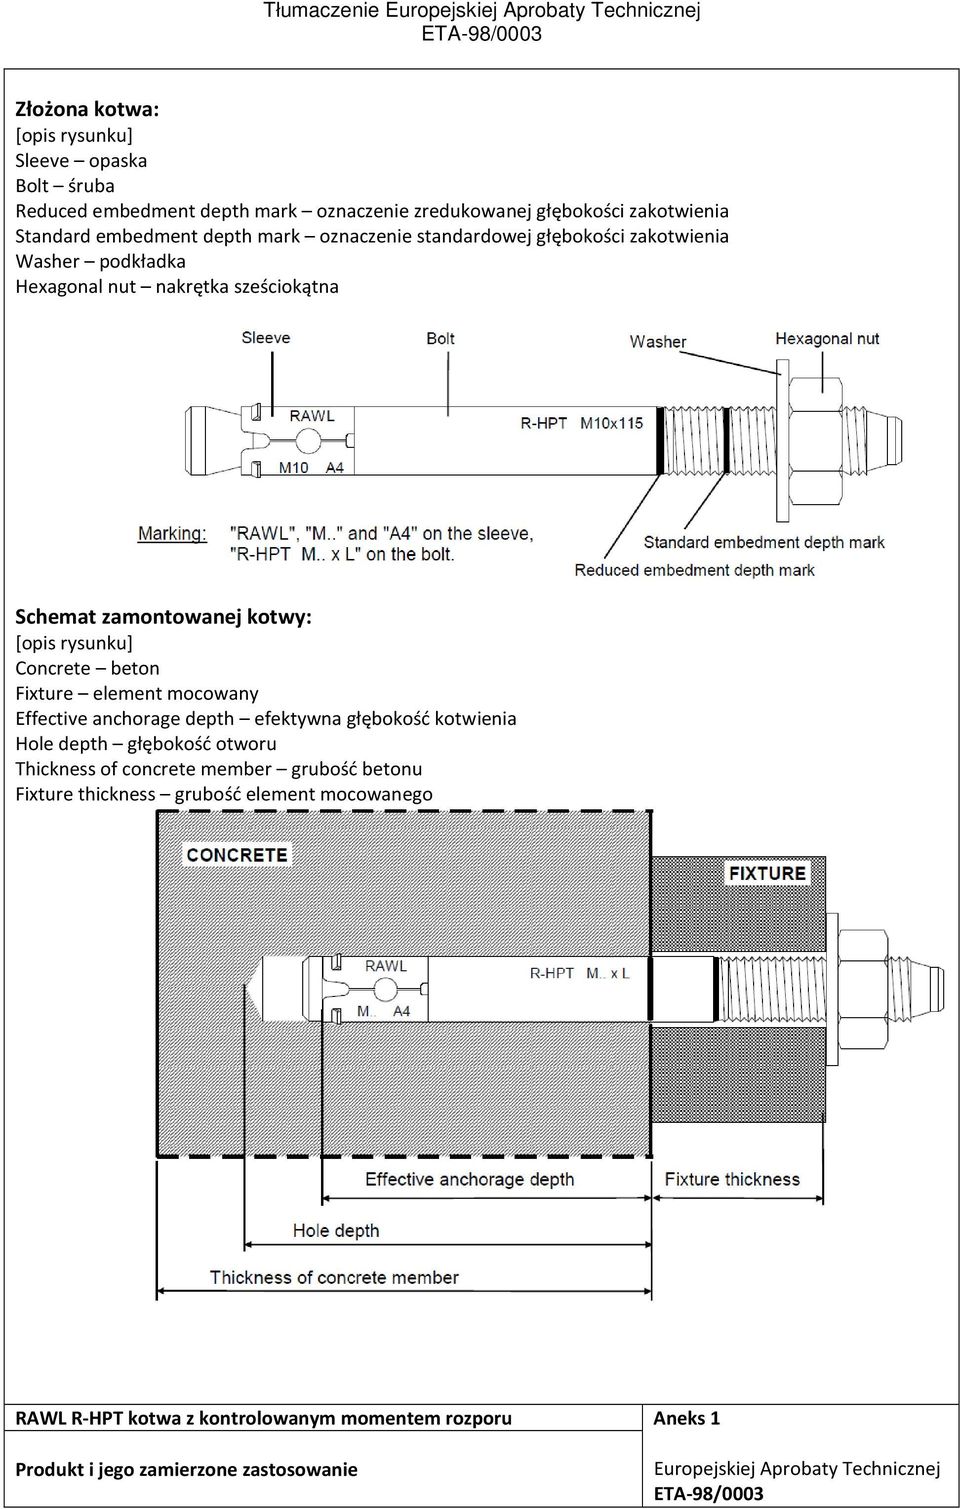 Concrete beton Fixture element mocowany Effective anchorage depth efektywna głębokość kotwienia Hole depth głębokość otworu Thickness of concrete member